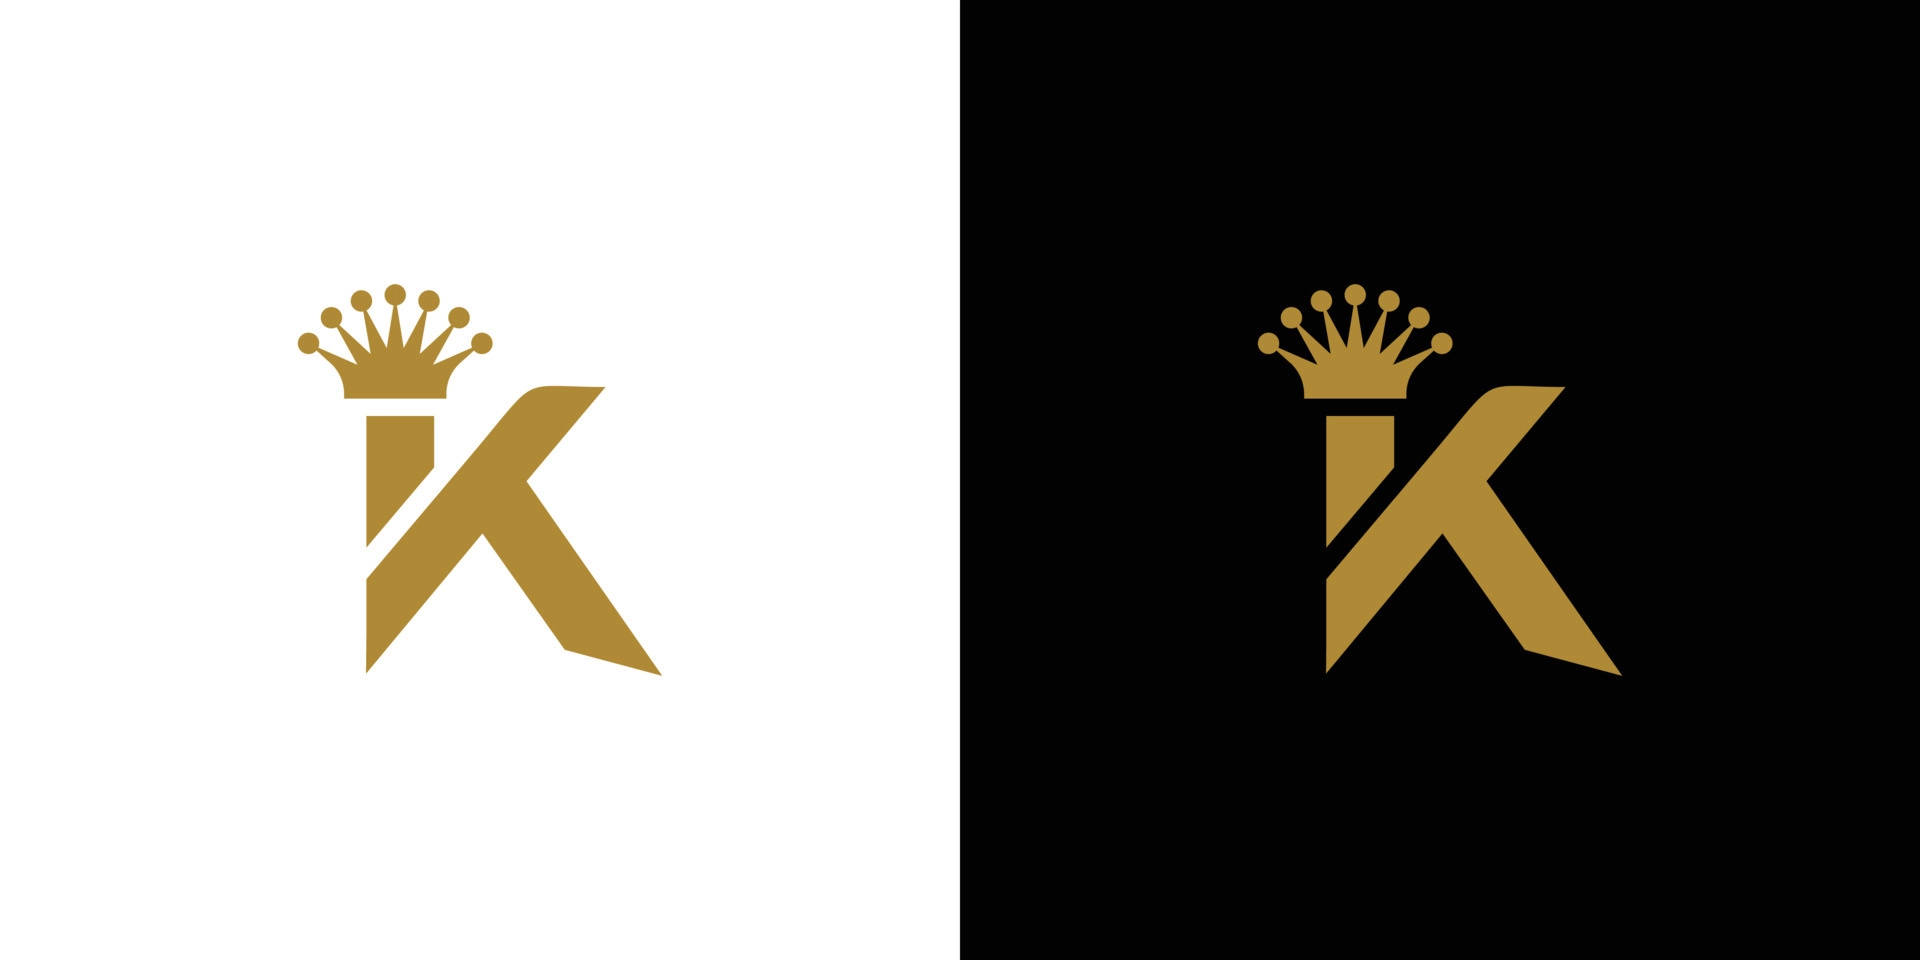 Cool King Logo Wallpaper